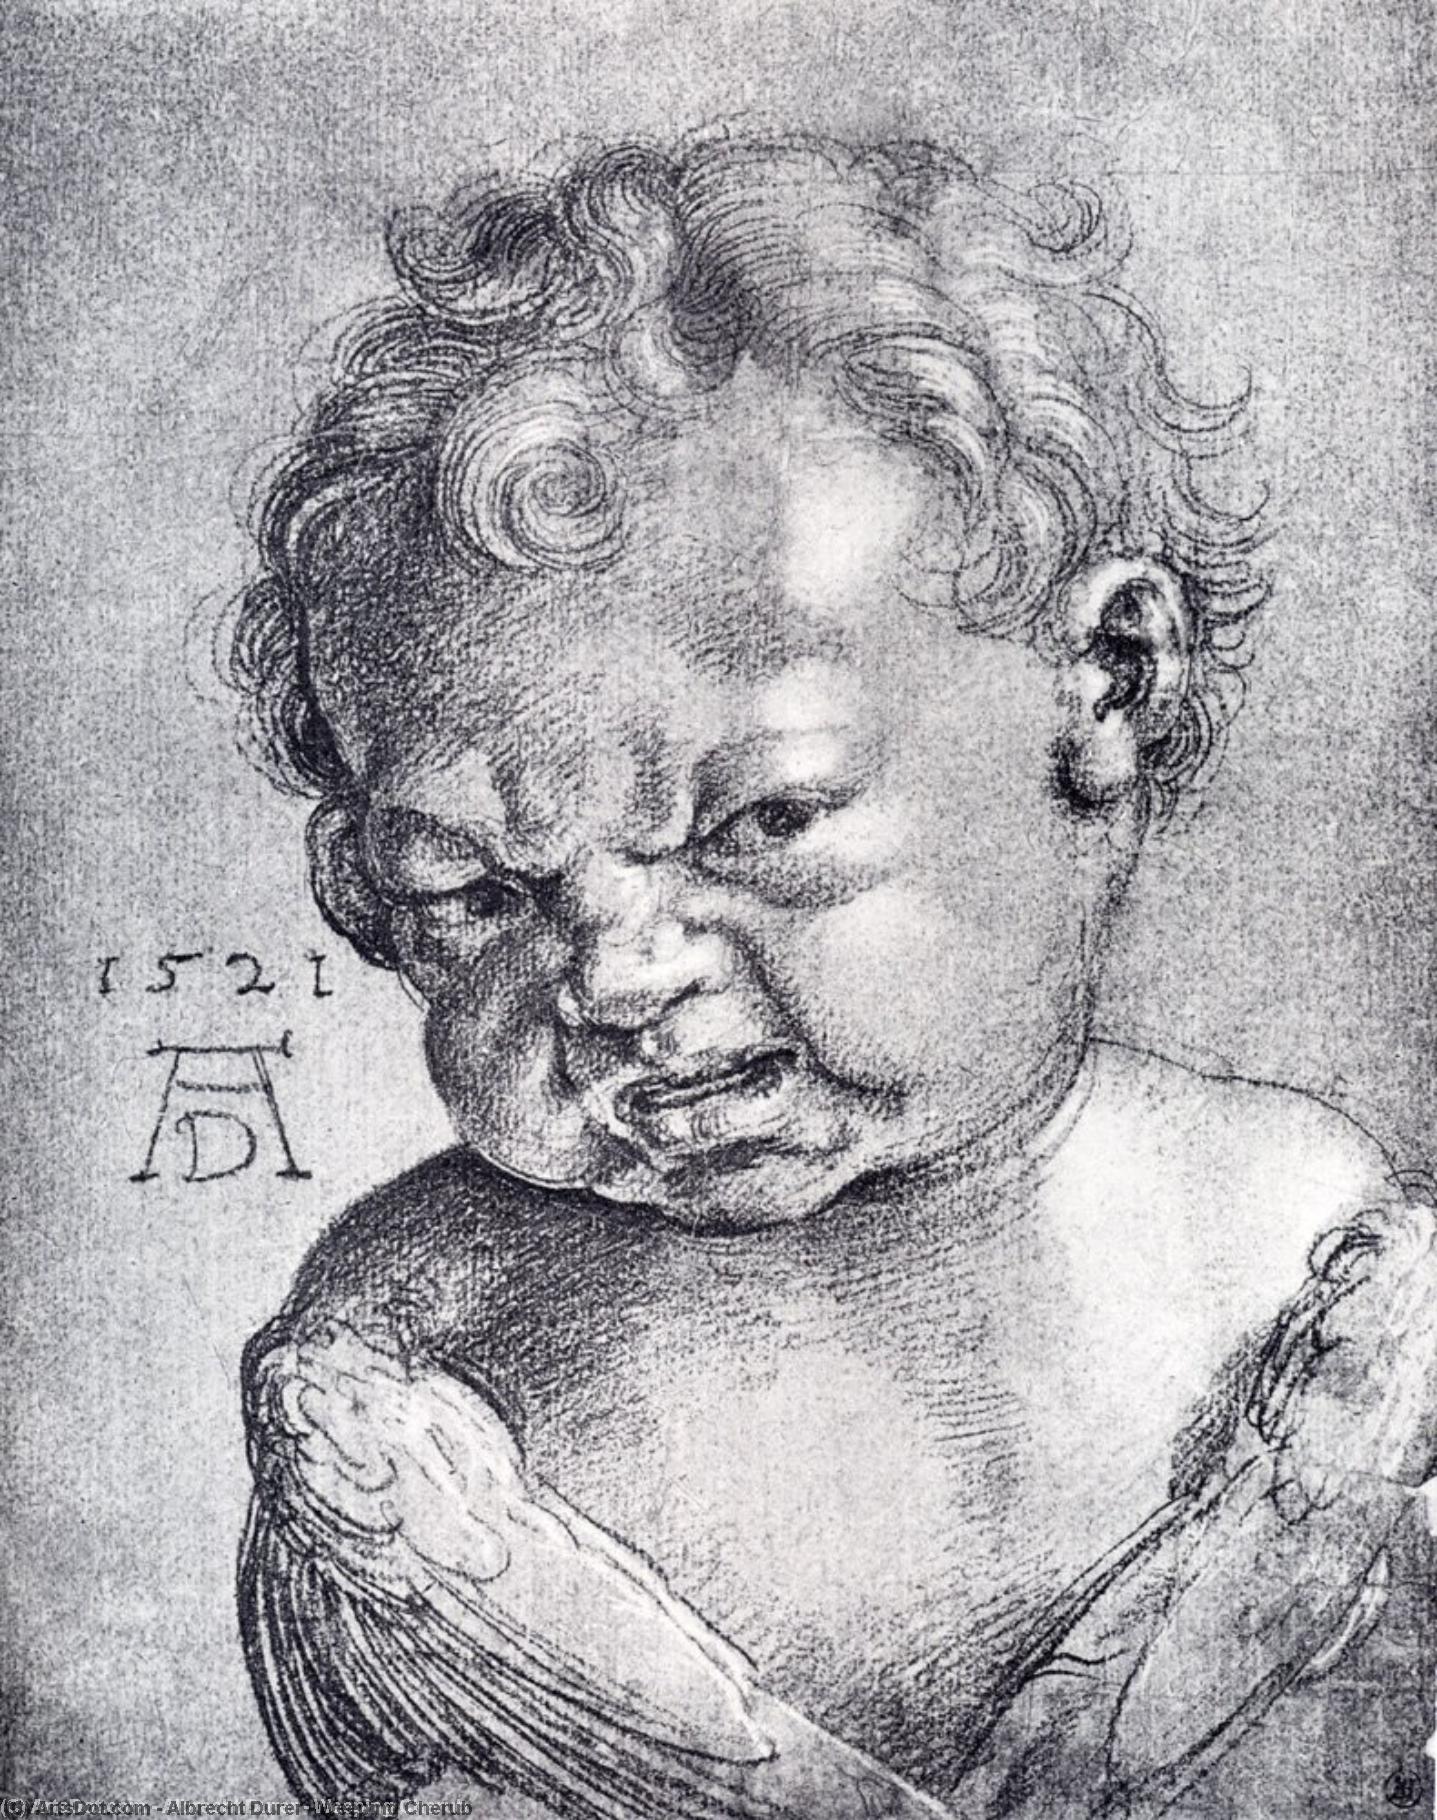 WikiOO.org - Encyclopedia of Fine Arts - Lukisan, Artwork Albrecht Durer - Weeping Cherub